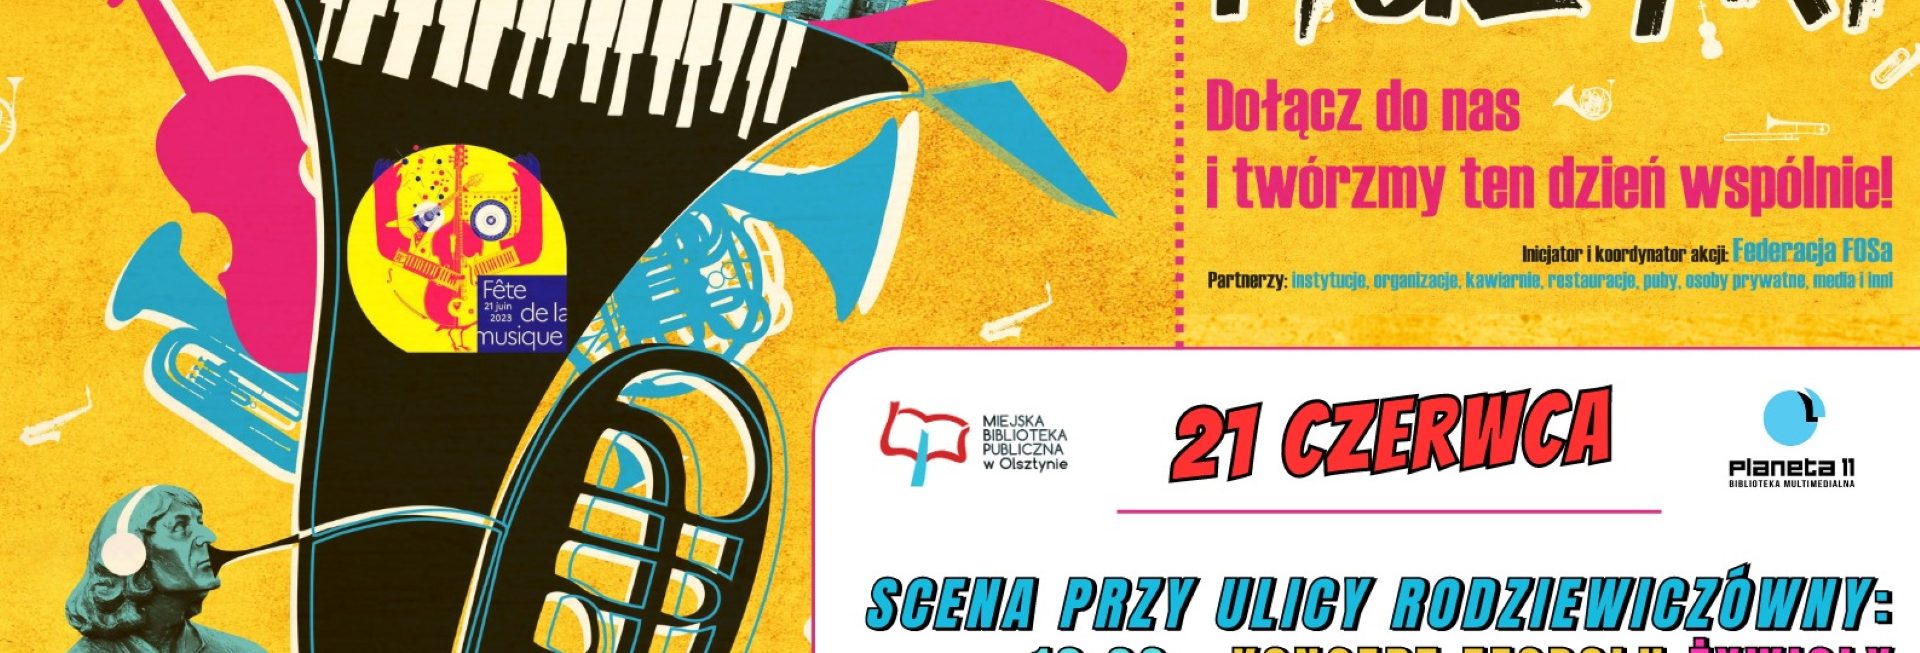 Plakat zapraszający w środę 21 czerwca 2023 r. do Olsztyna na Święto Muzyki - Fête de la musique - Olsztyn 2023.